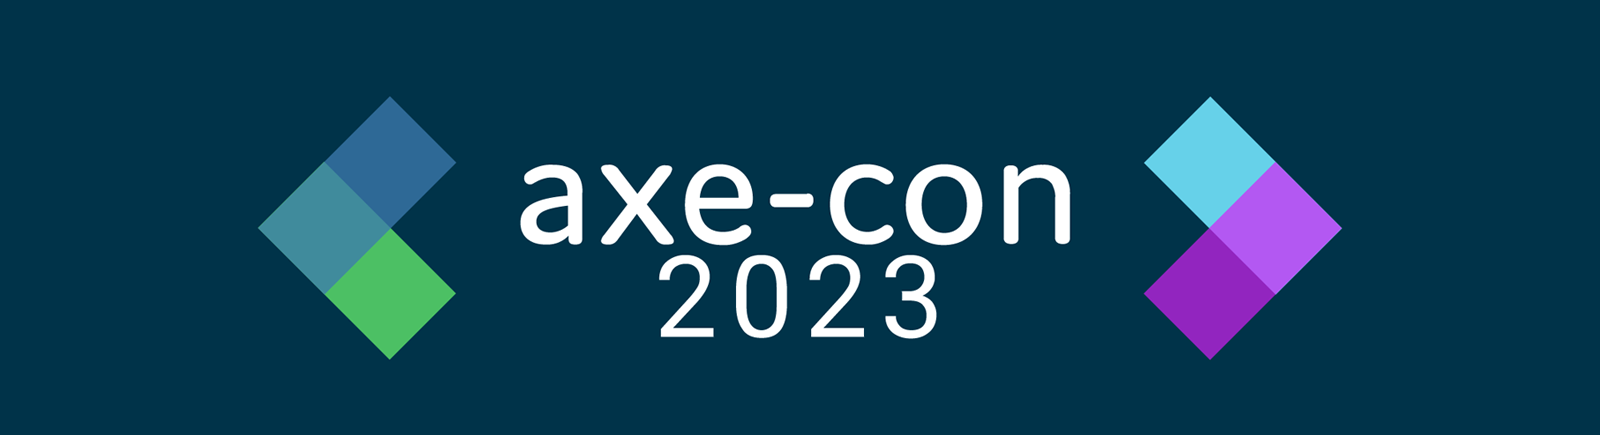 axe-con 2023 logo